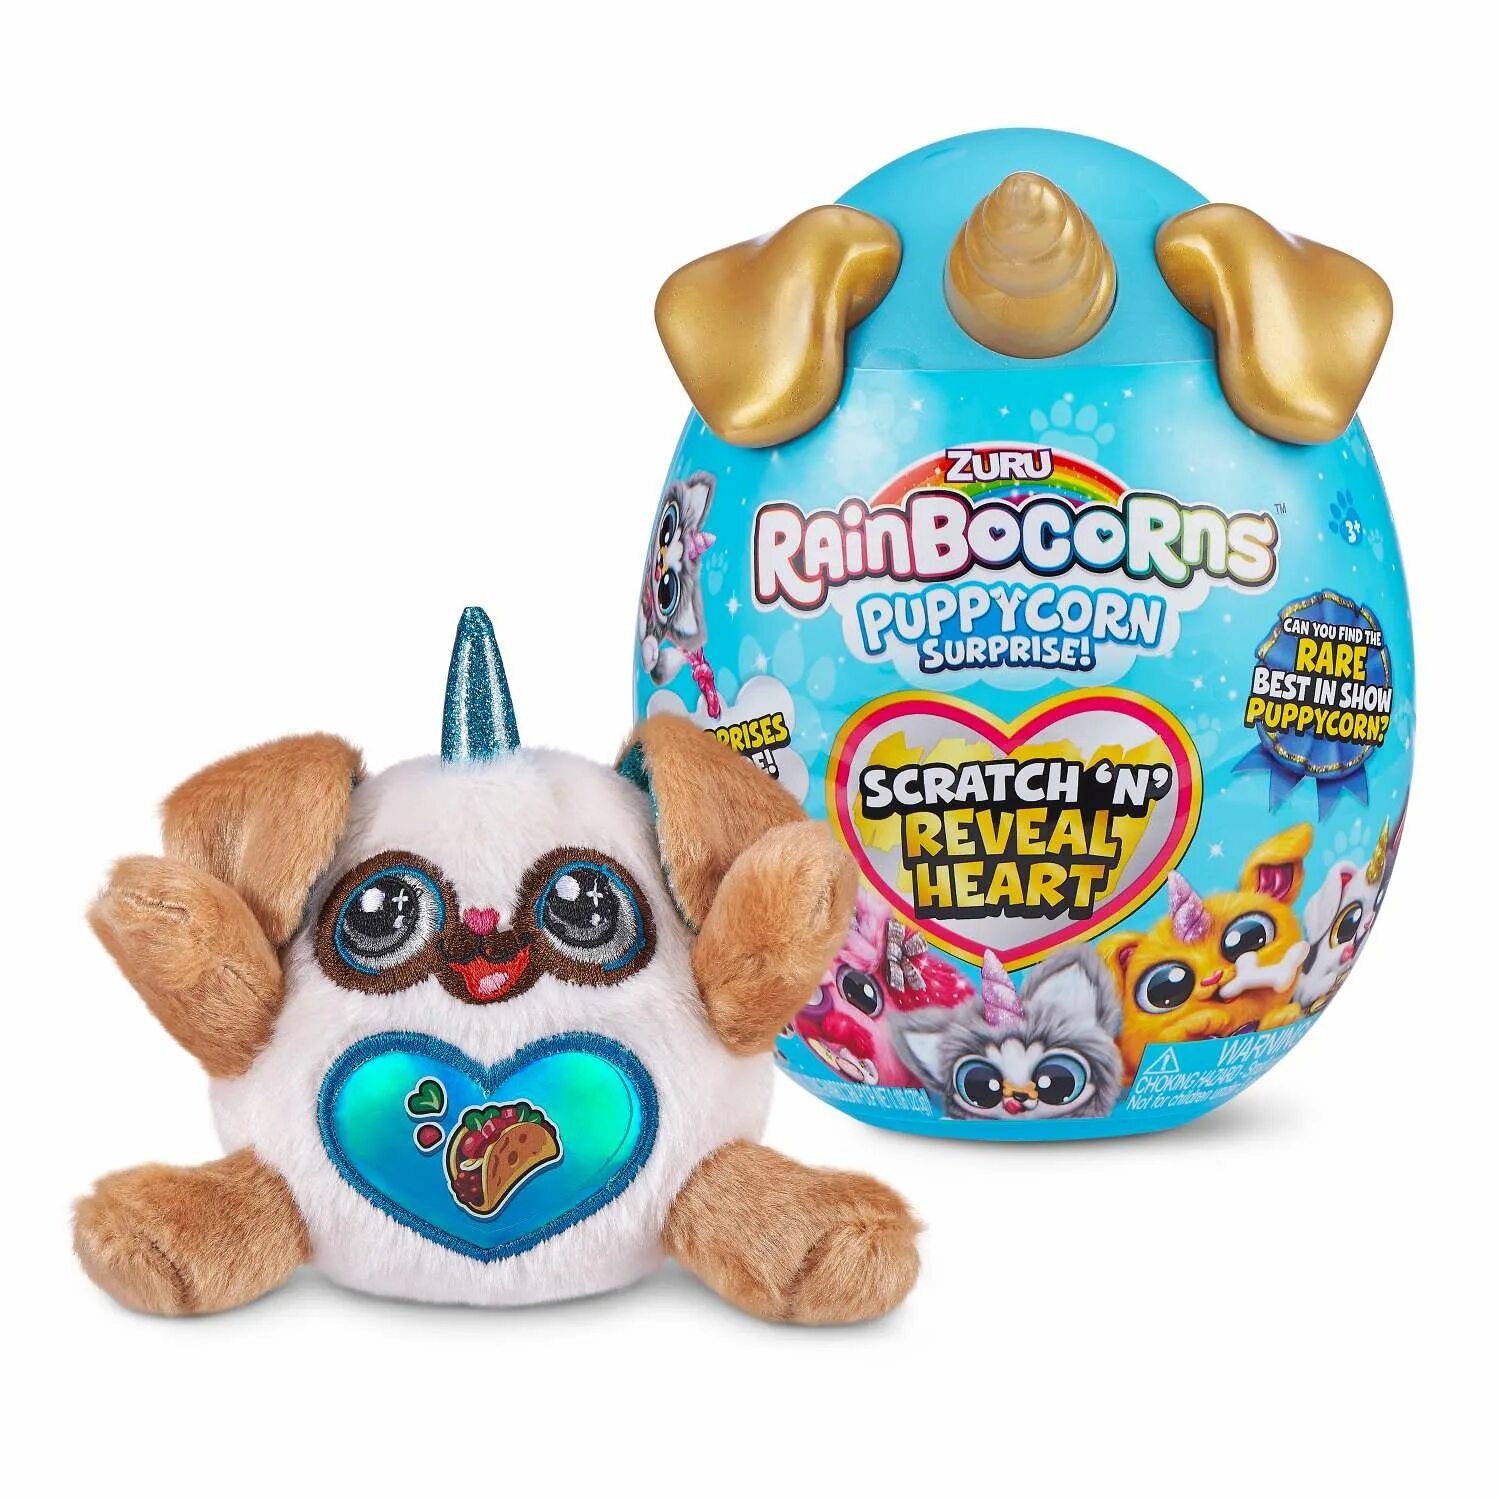 Мягкие сюрпризы. Rainbocorns Puppycorn. Rainbocorns Puppy-Corn игрушка. Игрушка Rainbocorns сюрприз.